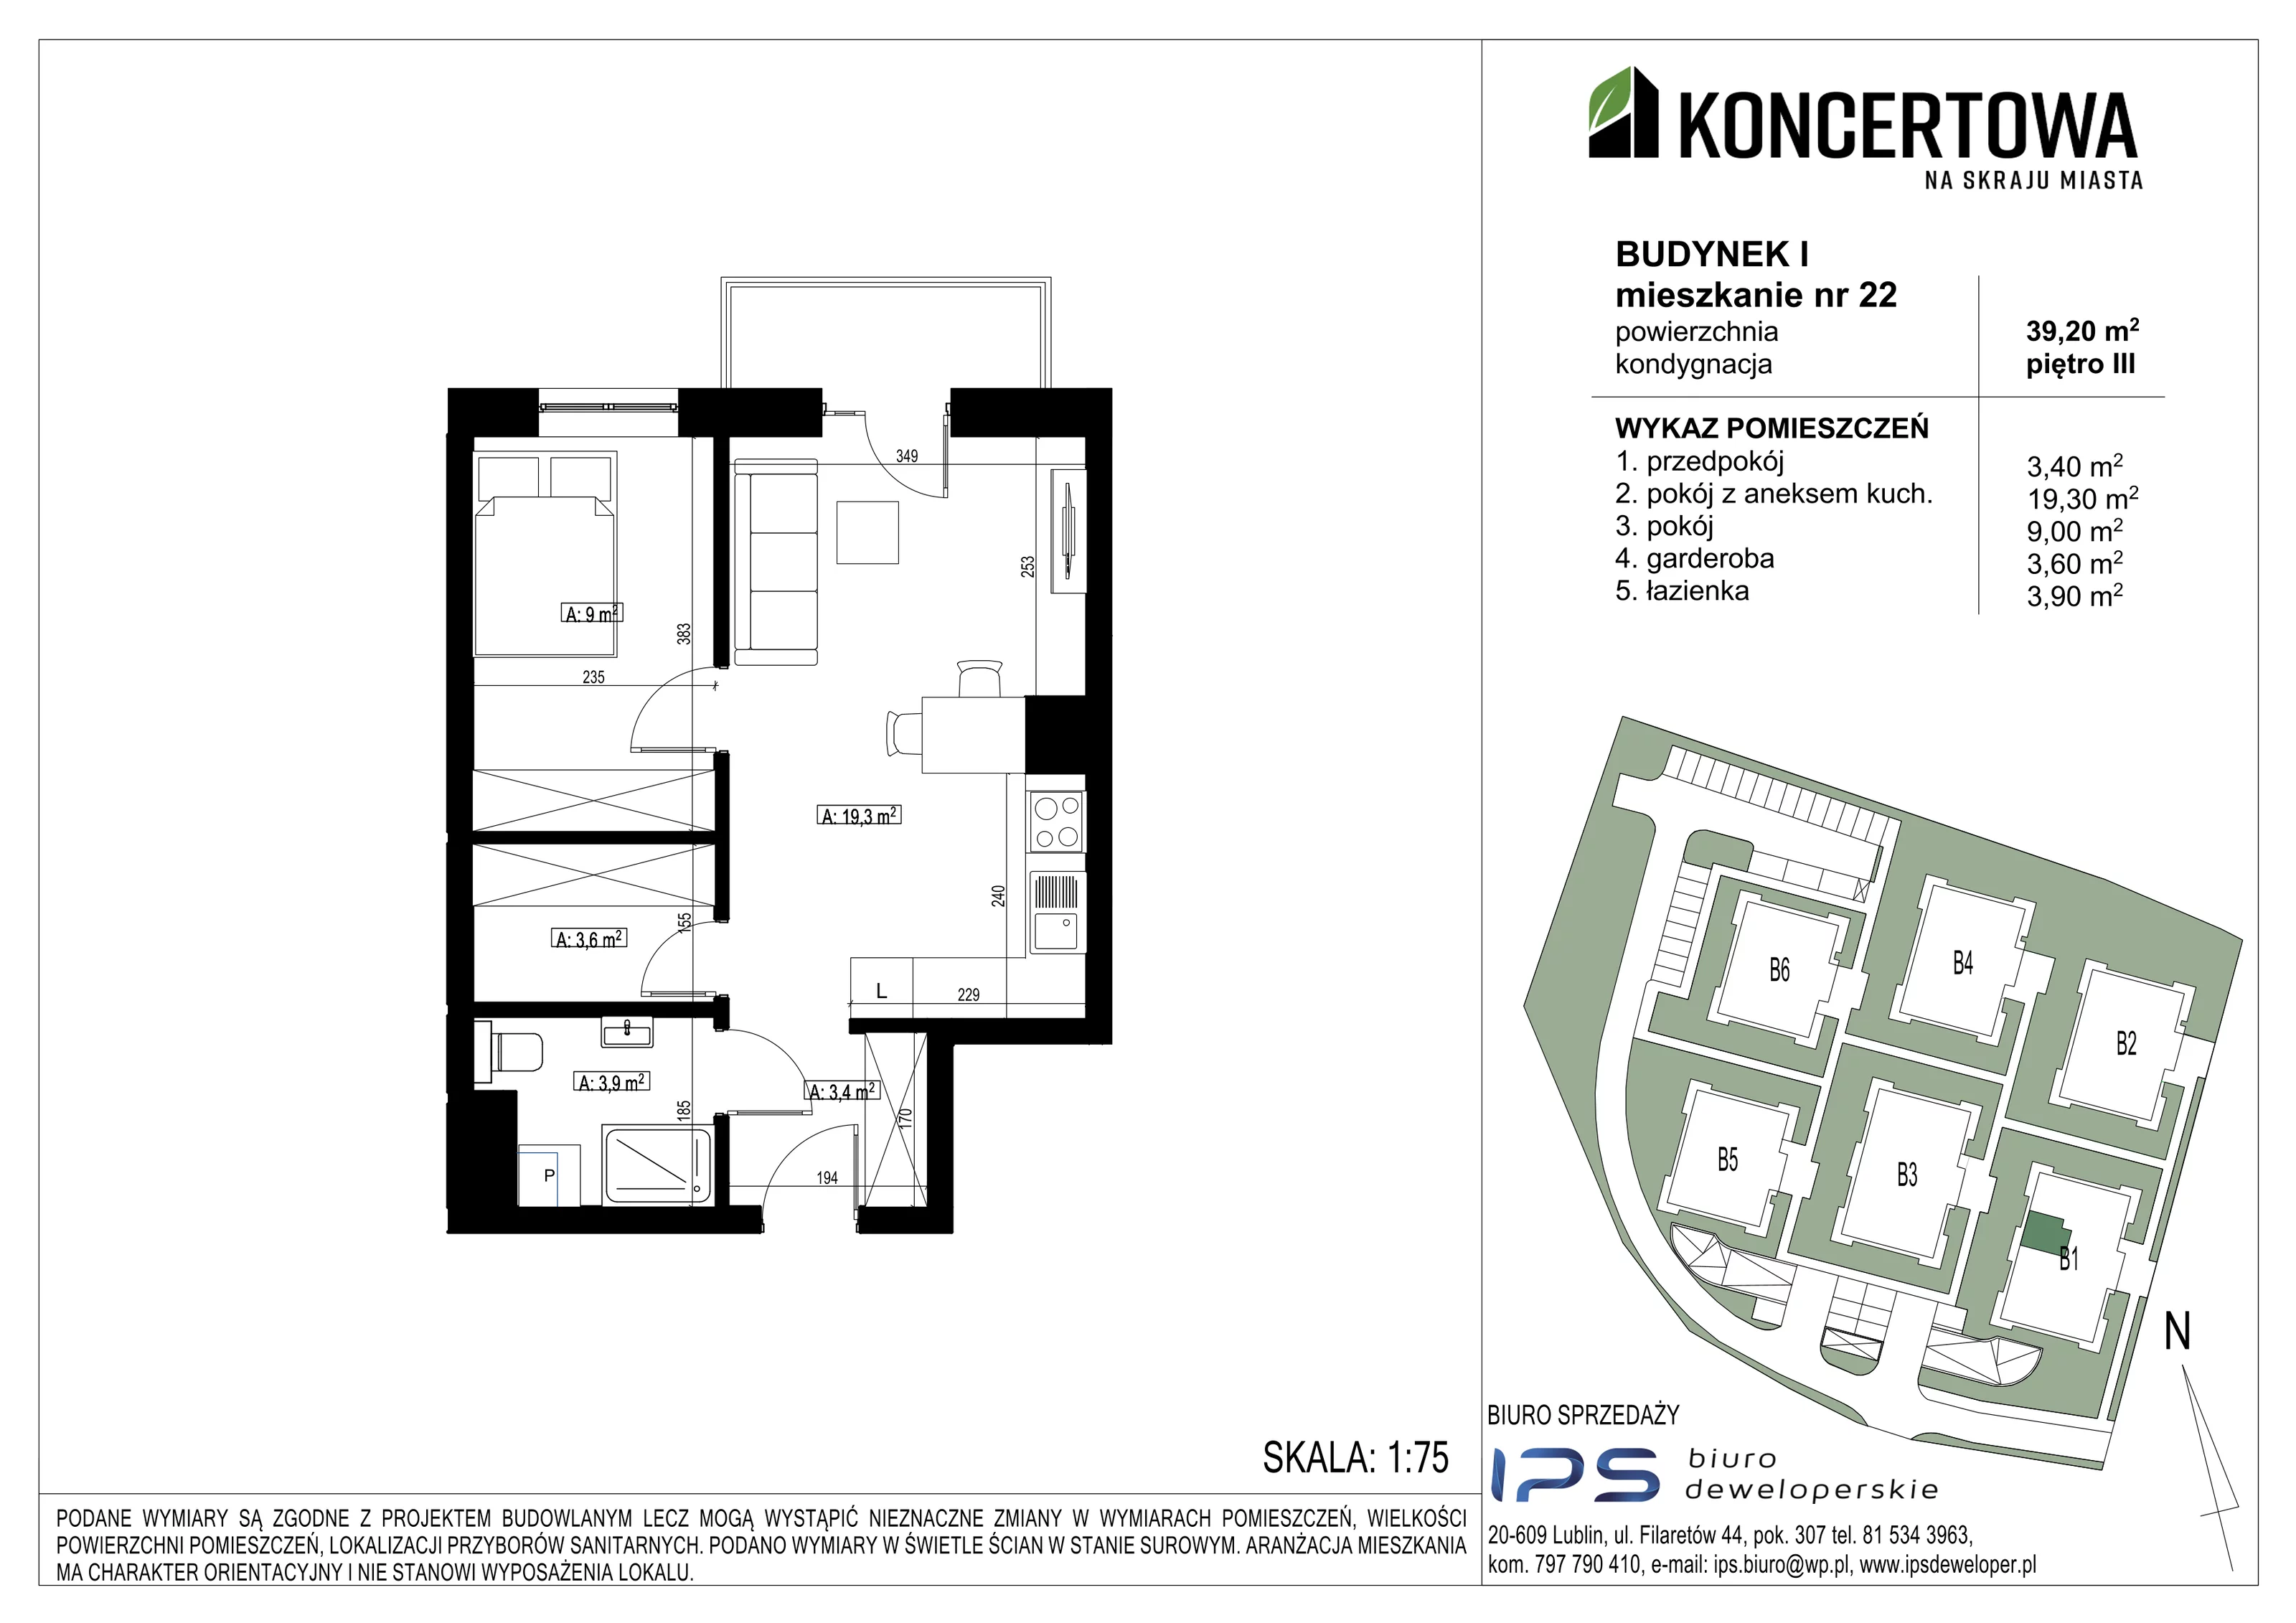 Mieszkanie 39,20 m², piętro 3, oferta nr 2_I/22, KONCERTOWA - Na skraju miasta, Lublin, Czechów Północny, Czechów Północny,  ul. Koncertowa